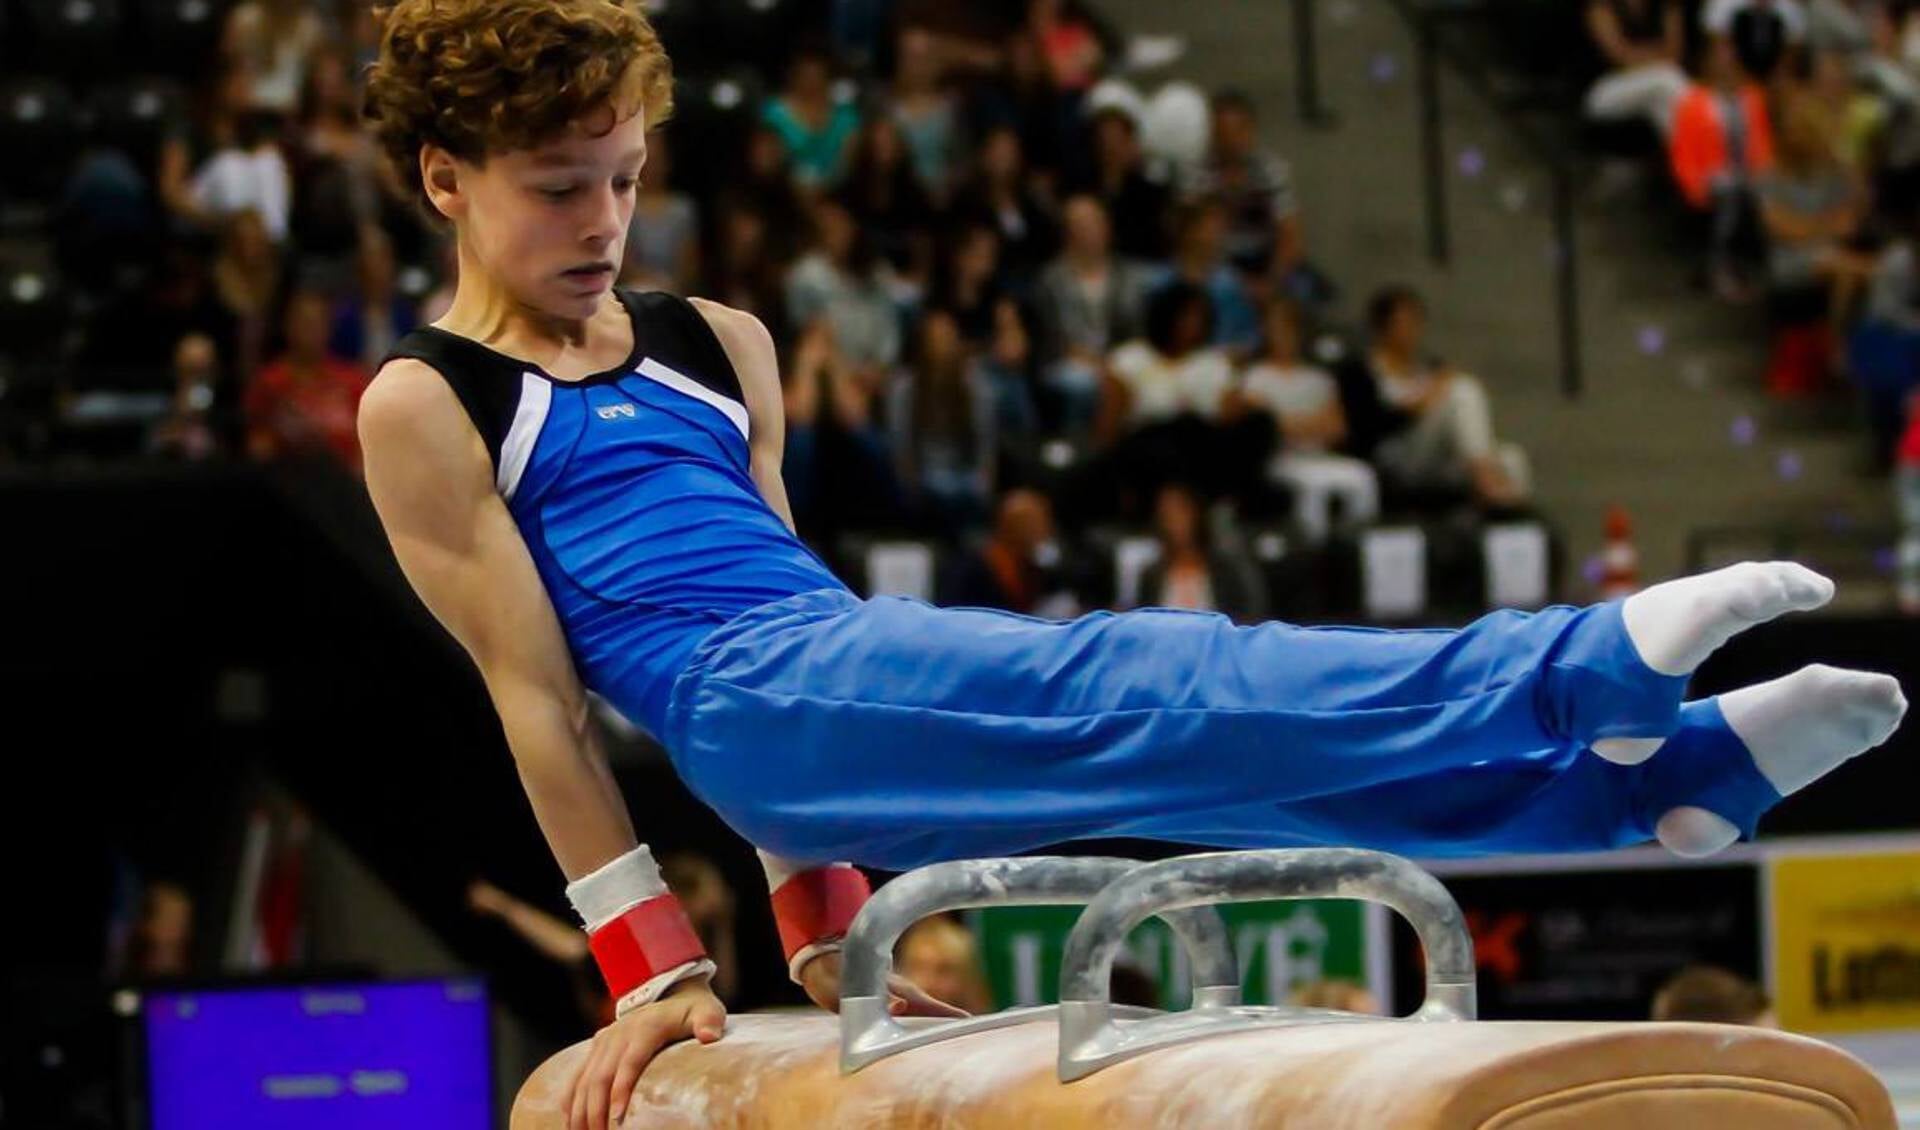 Mees wint zilver in de NK-finale 2016 tijdens Fantastic Gymnastics in Ahoy Rotterdam